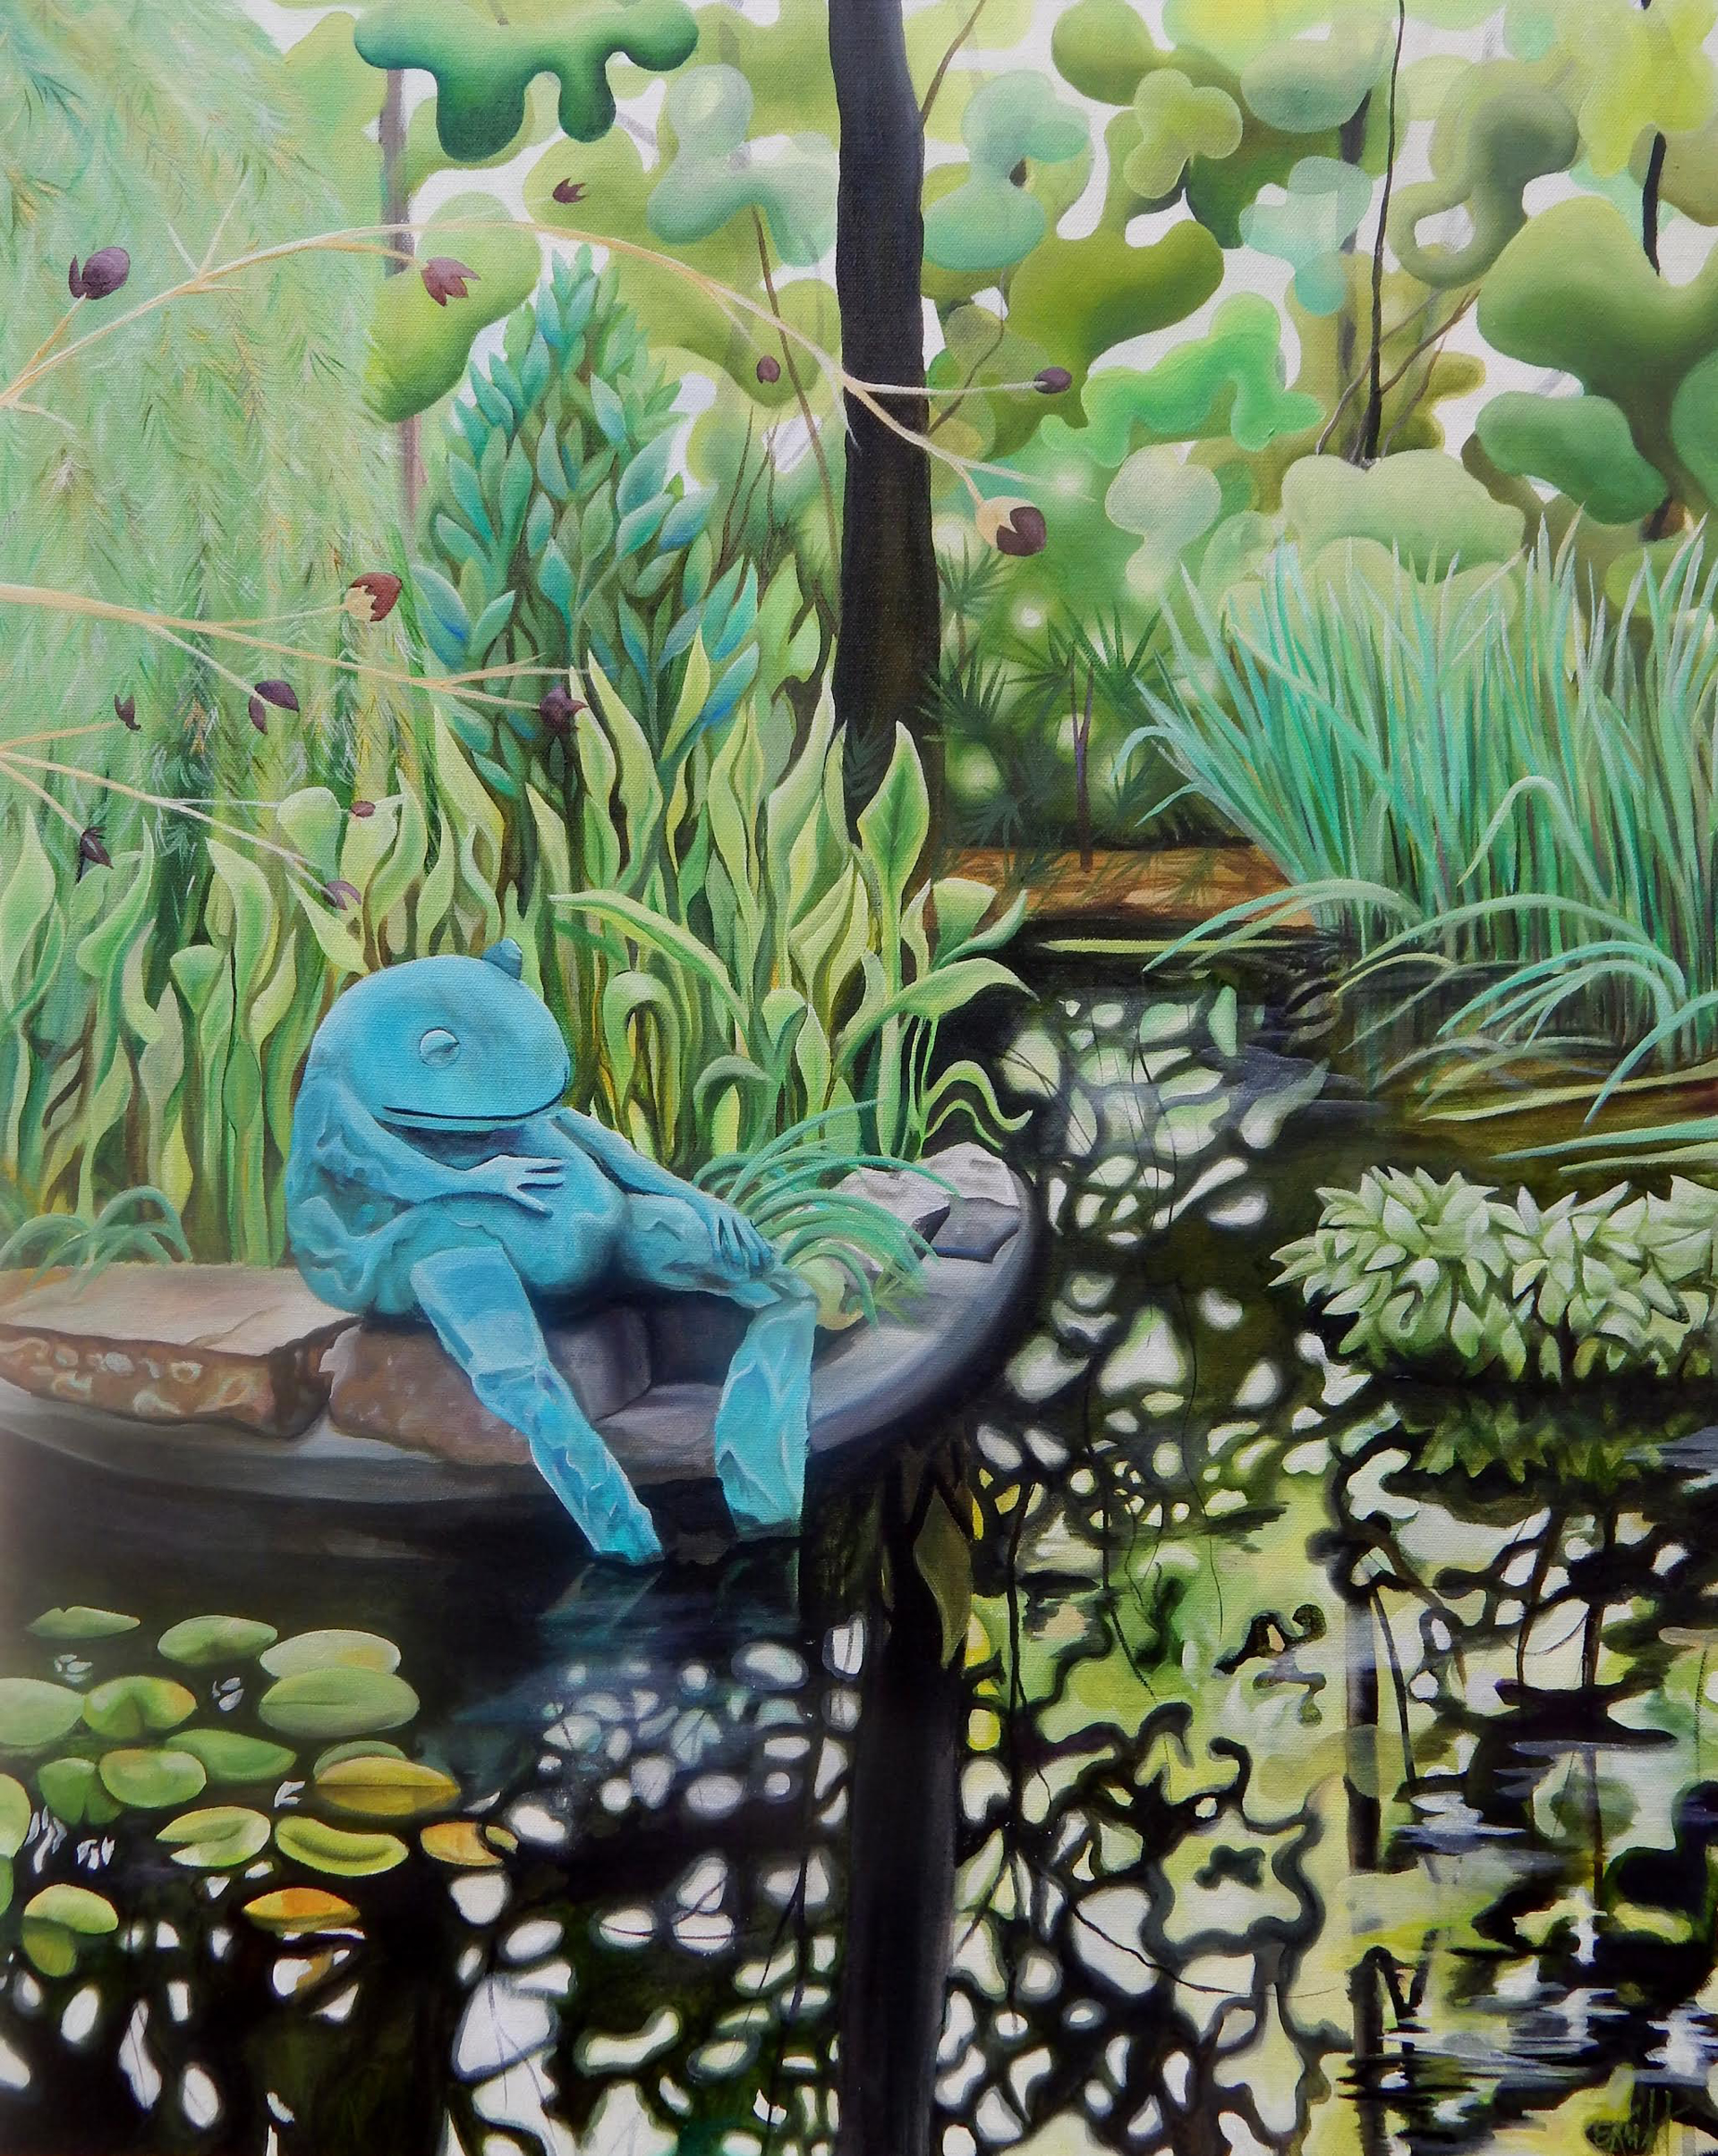 Atlanta Botanical Garden Frog Pond #1 by Emma Knight